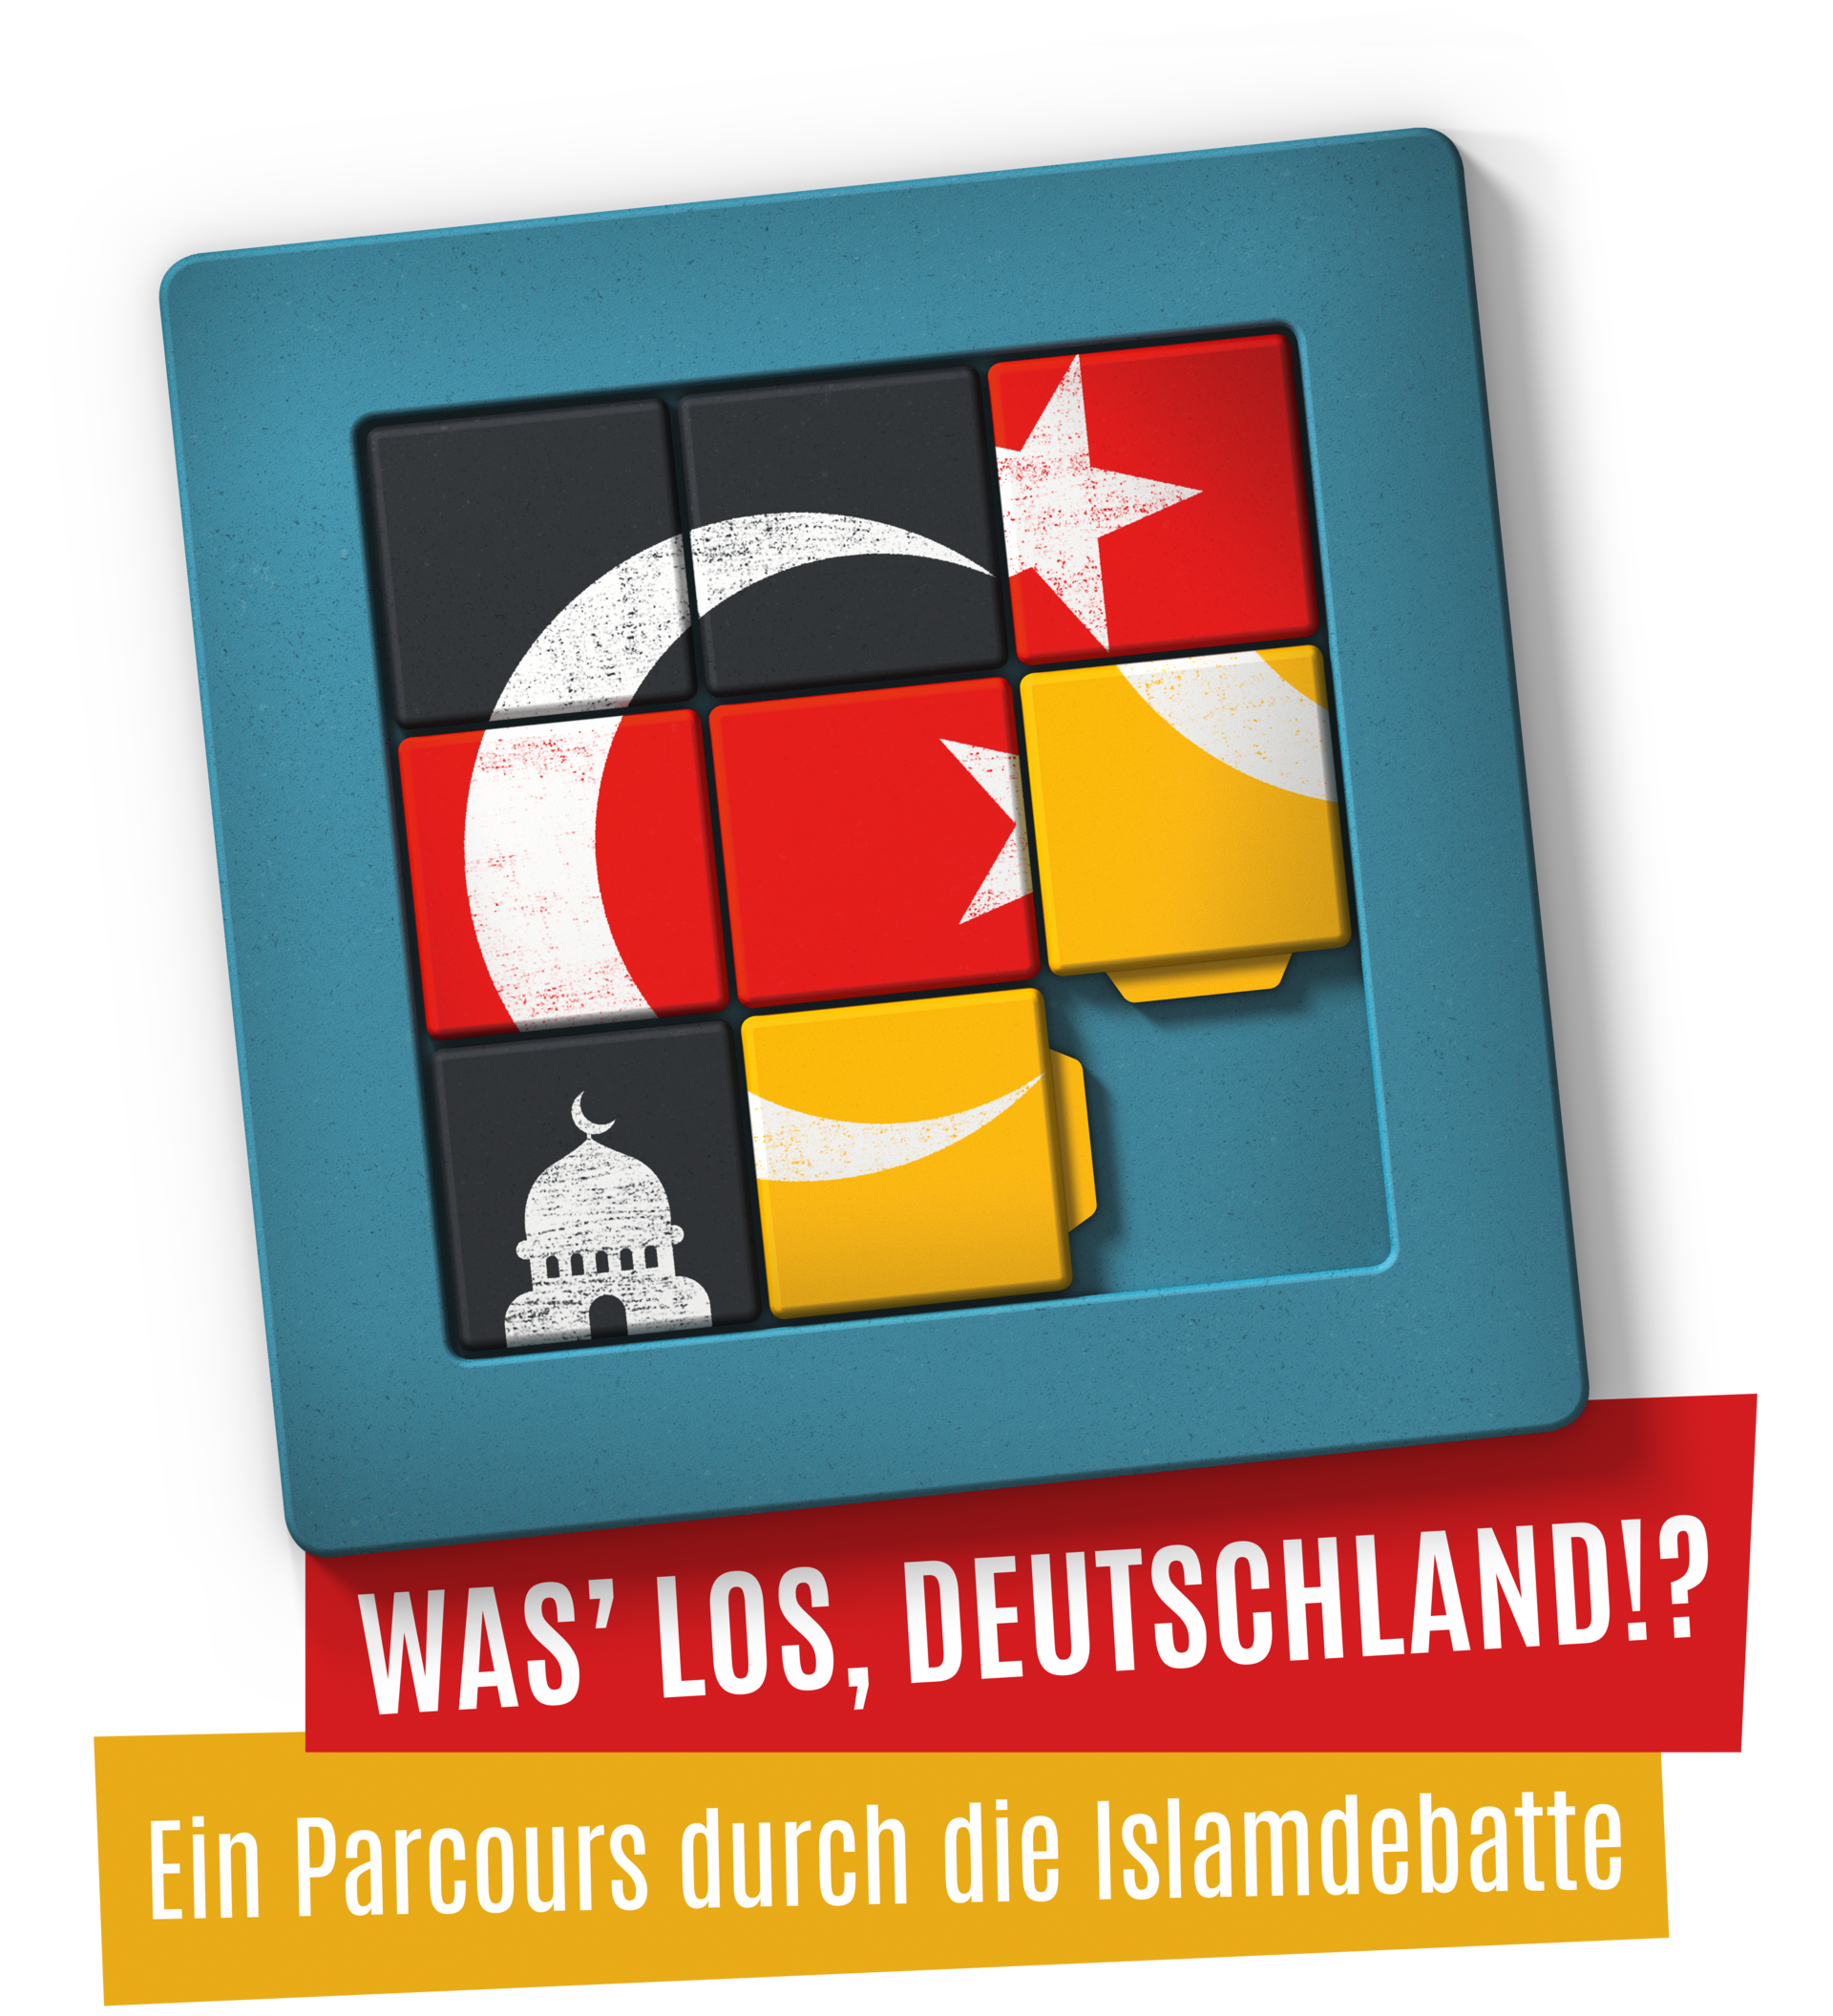 Was' los, Deutschland? Ein Parcours durch die Islamdebatte (Bild mit Schiebepuzzle)